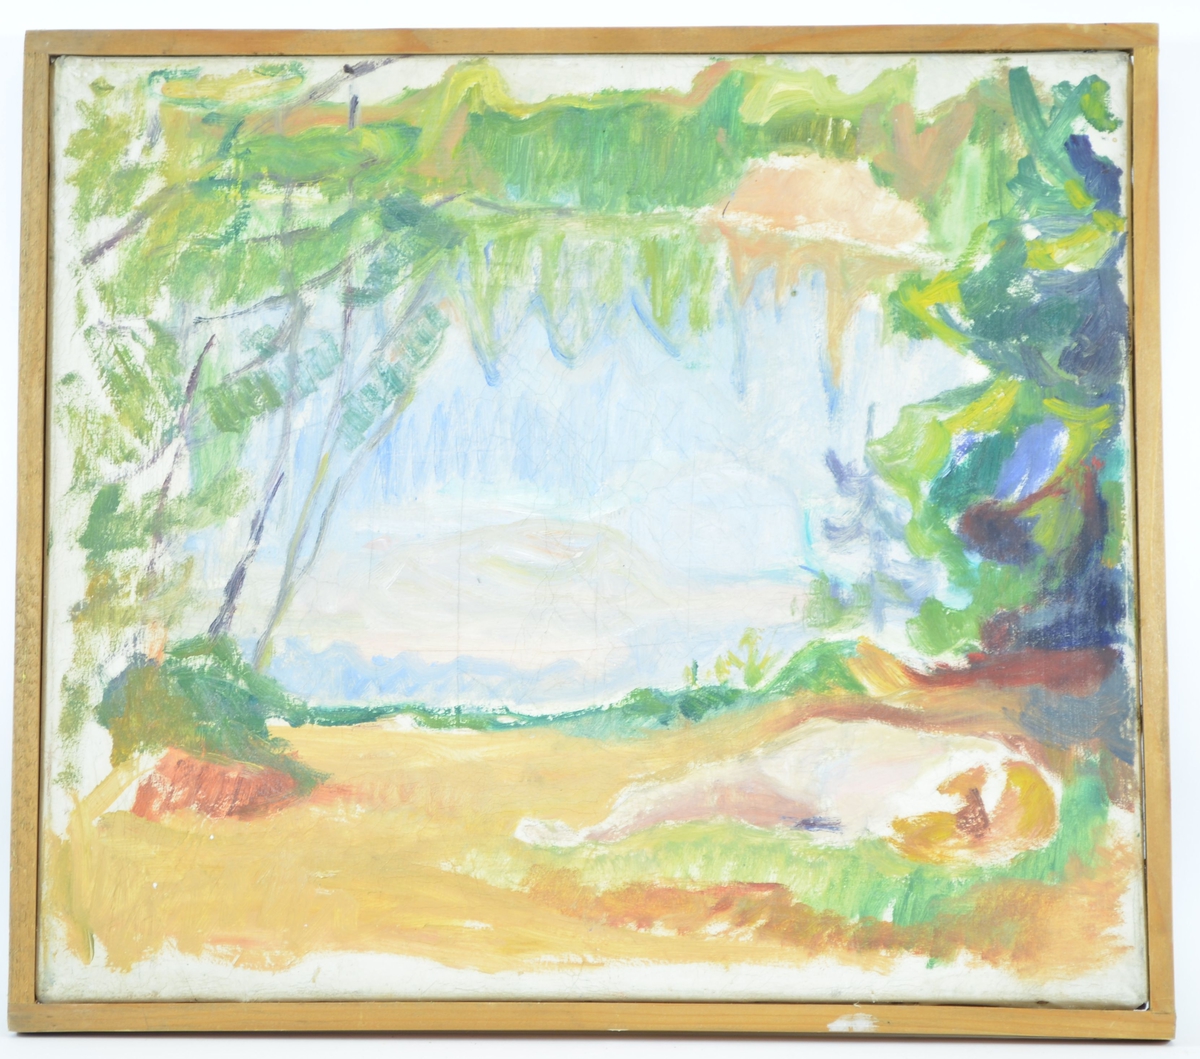 Motivet viser en landskapsscene, hvor en åpen eng er omkranset av skog. Til høyre i bildet ser man konturen av noe som kan være et menneske som ligger på rygg på bakken.